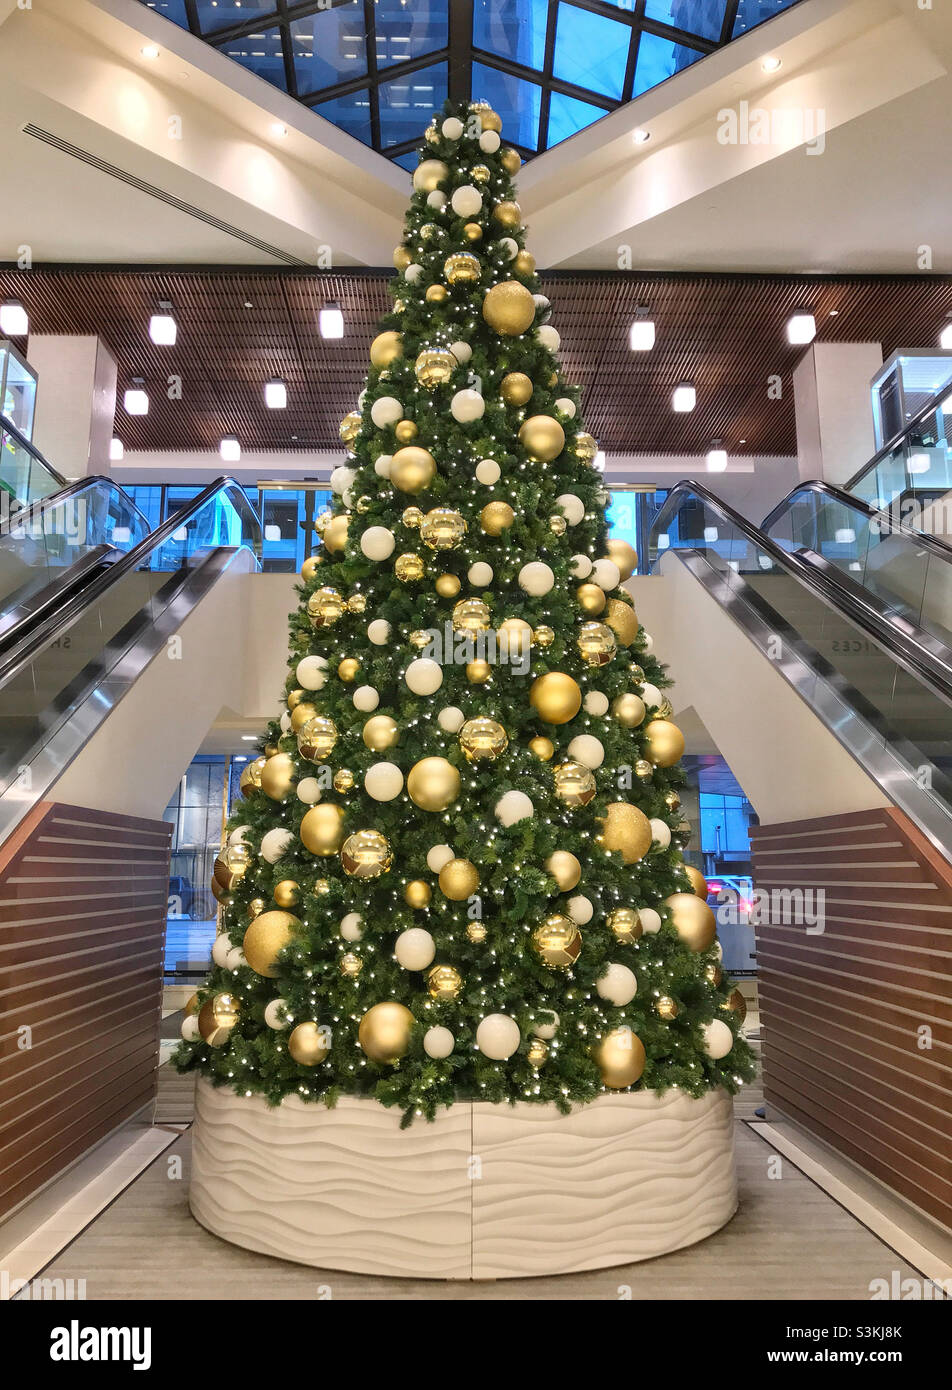 Arbre de Noël avec boules dorées entre deux ascenseurs dans le hall d'un bâtiment.Centre-ville de Calgary, Alberta, Canada. Banque D'Images